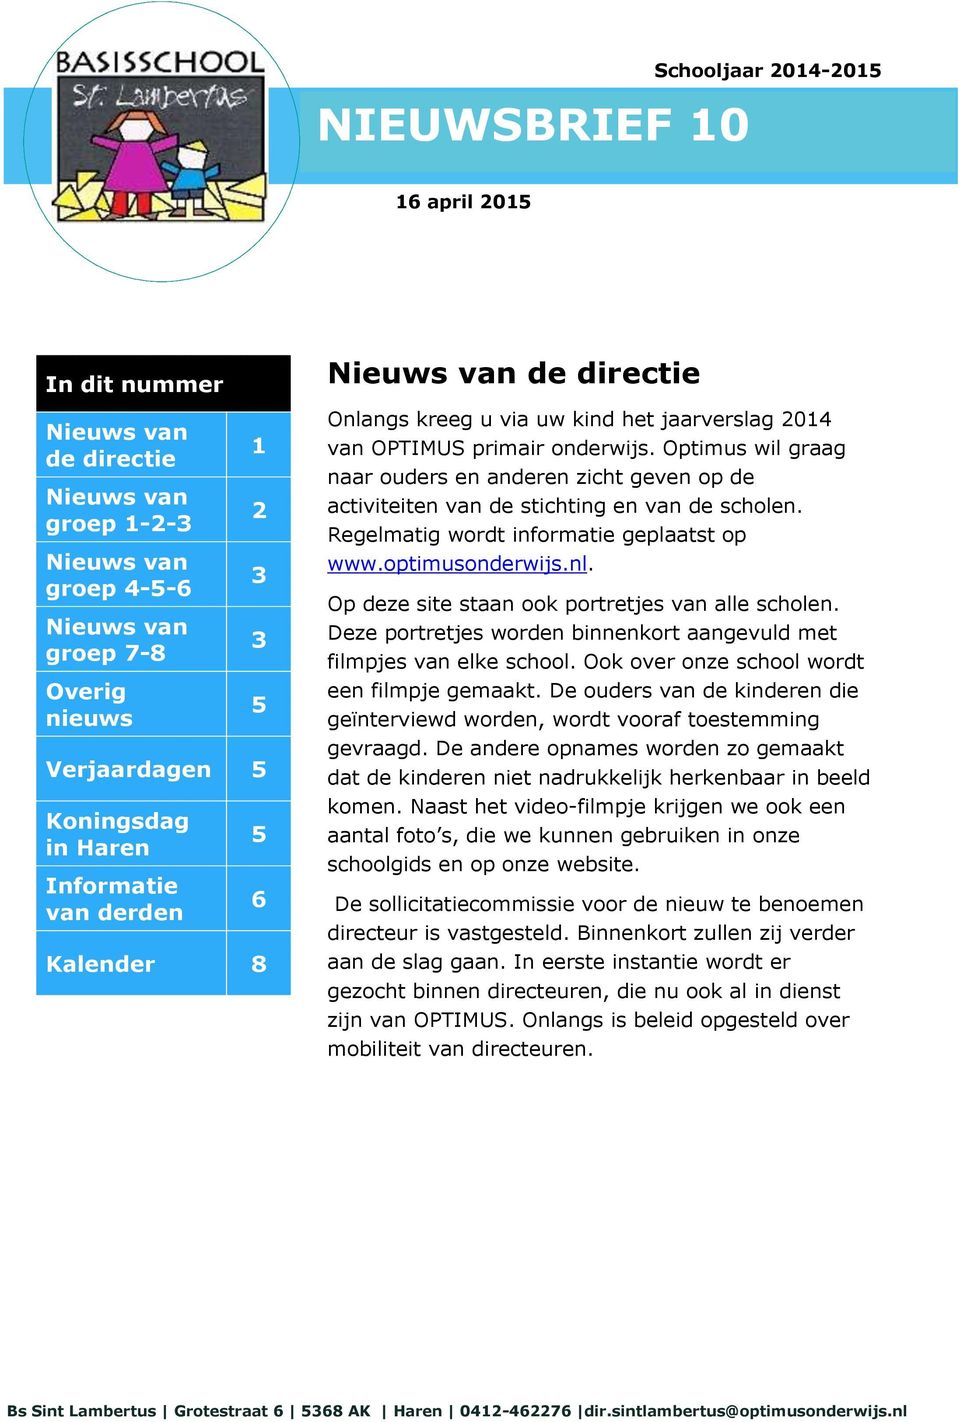 Optimus wil graag naar ouders en anderen zicht geven op de activiteiten van de stichting en van de scholen. Regelmatig wordt informatie geplaatst op www.optimusonderwijs.nl.